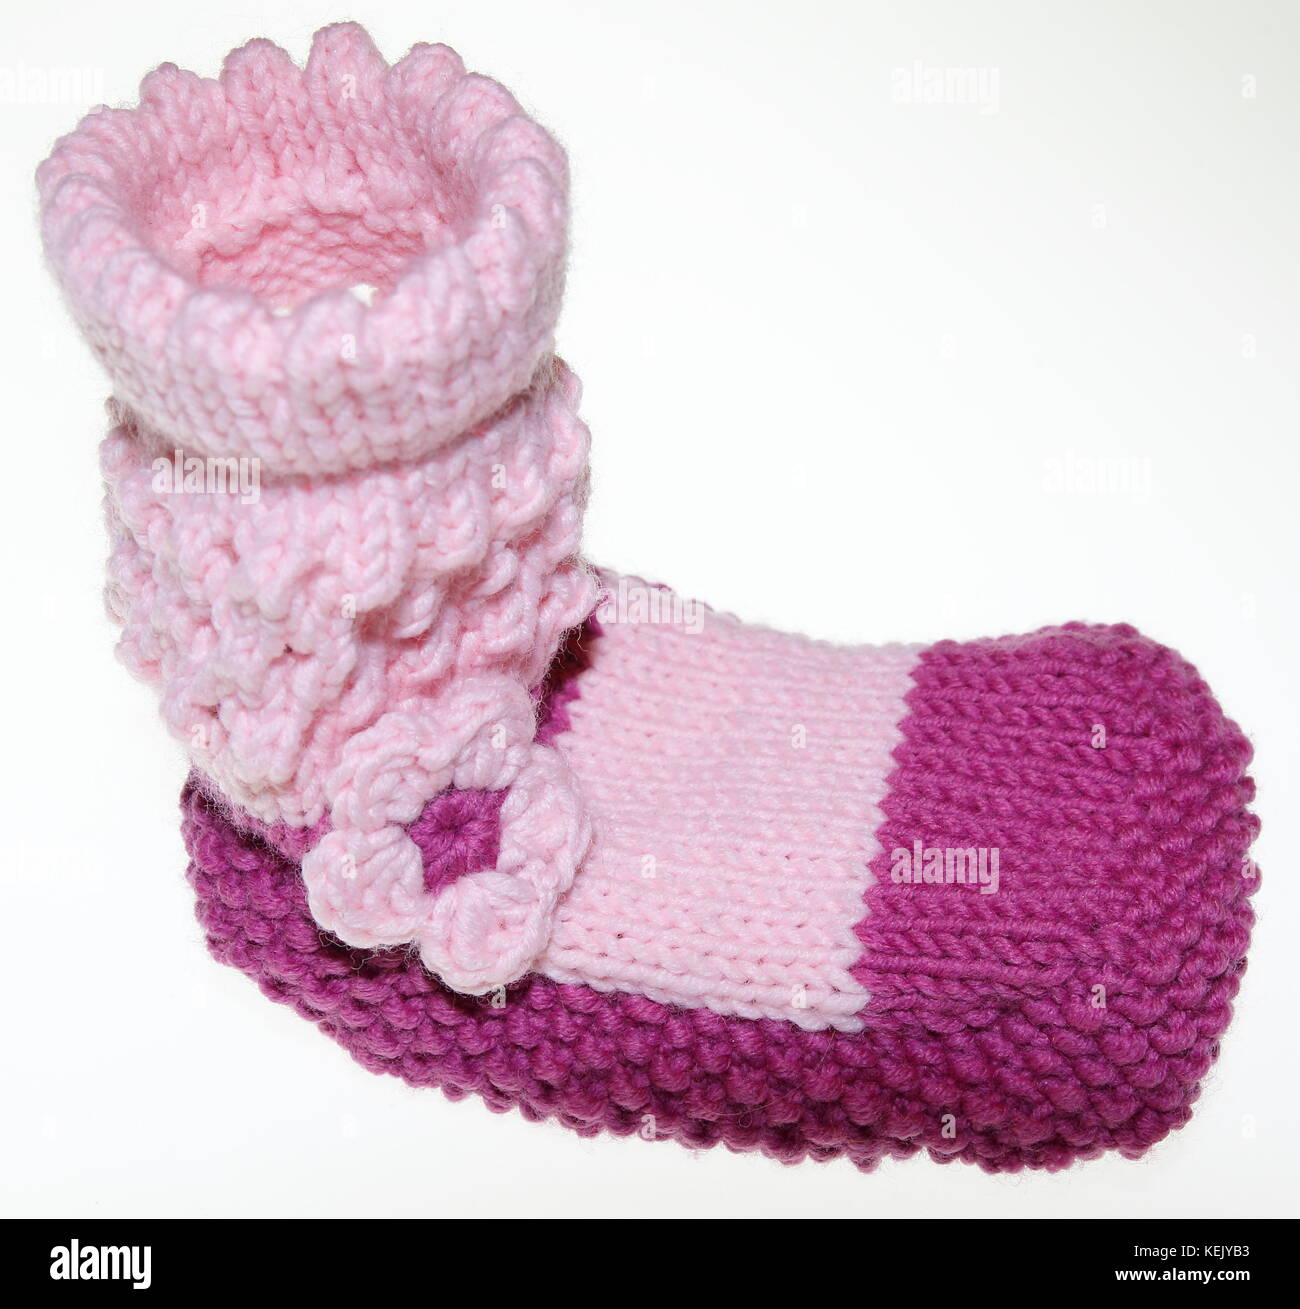 Mädchen Baby Socken, Strümpfe, gestrickt in Rosa, Rosa Stockfoto